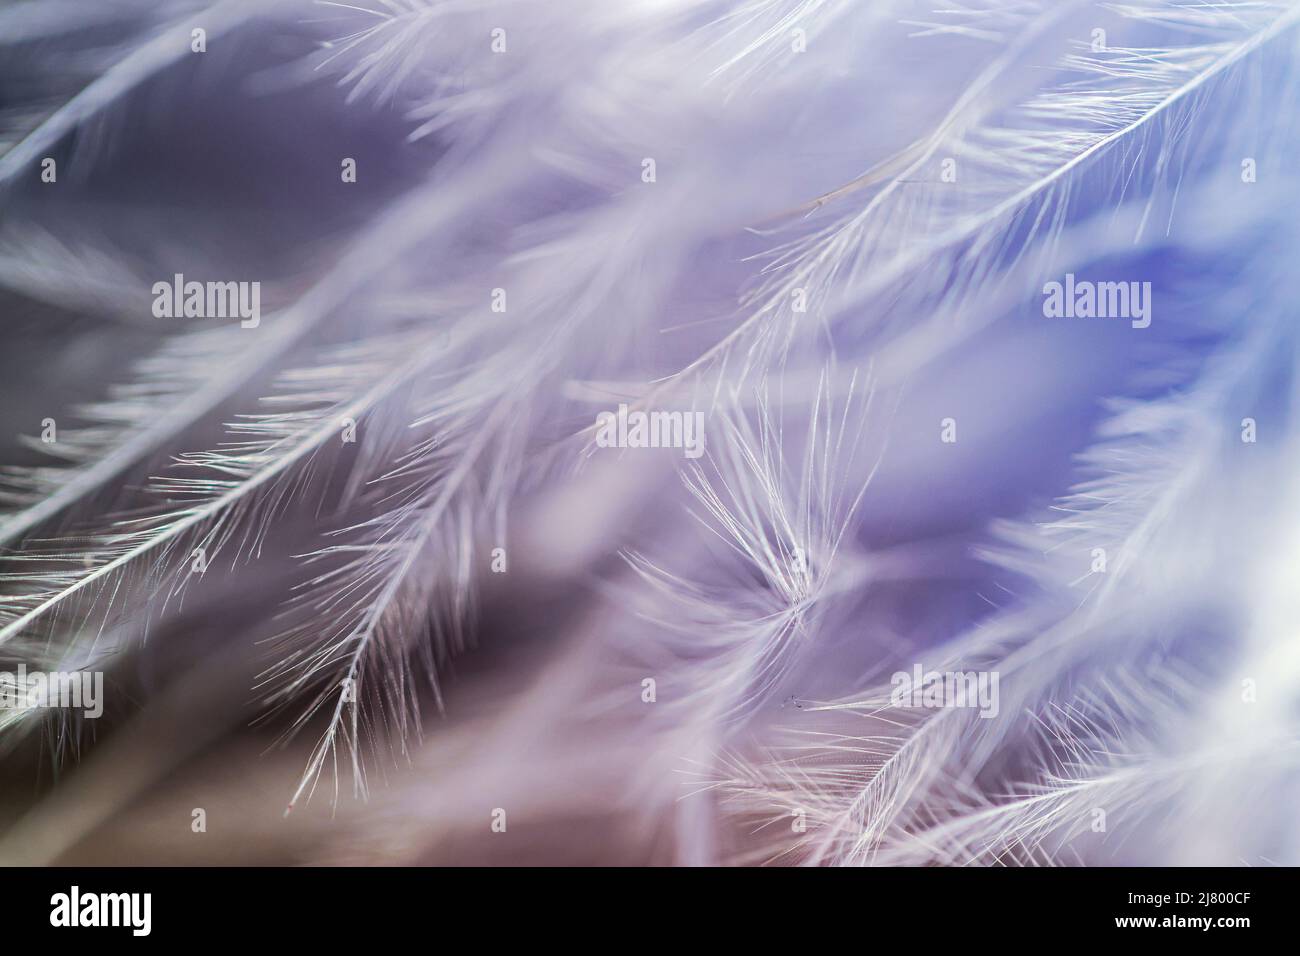 Macro image of a Feather Boa Stock Photo